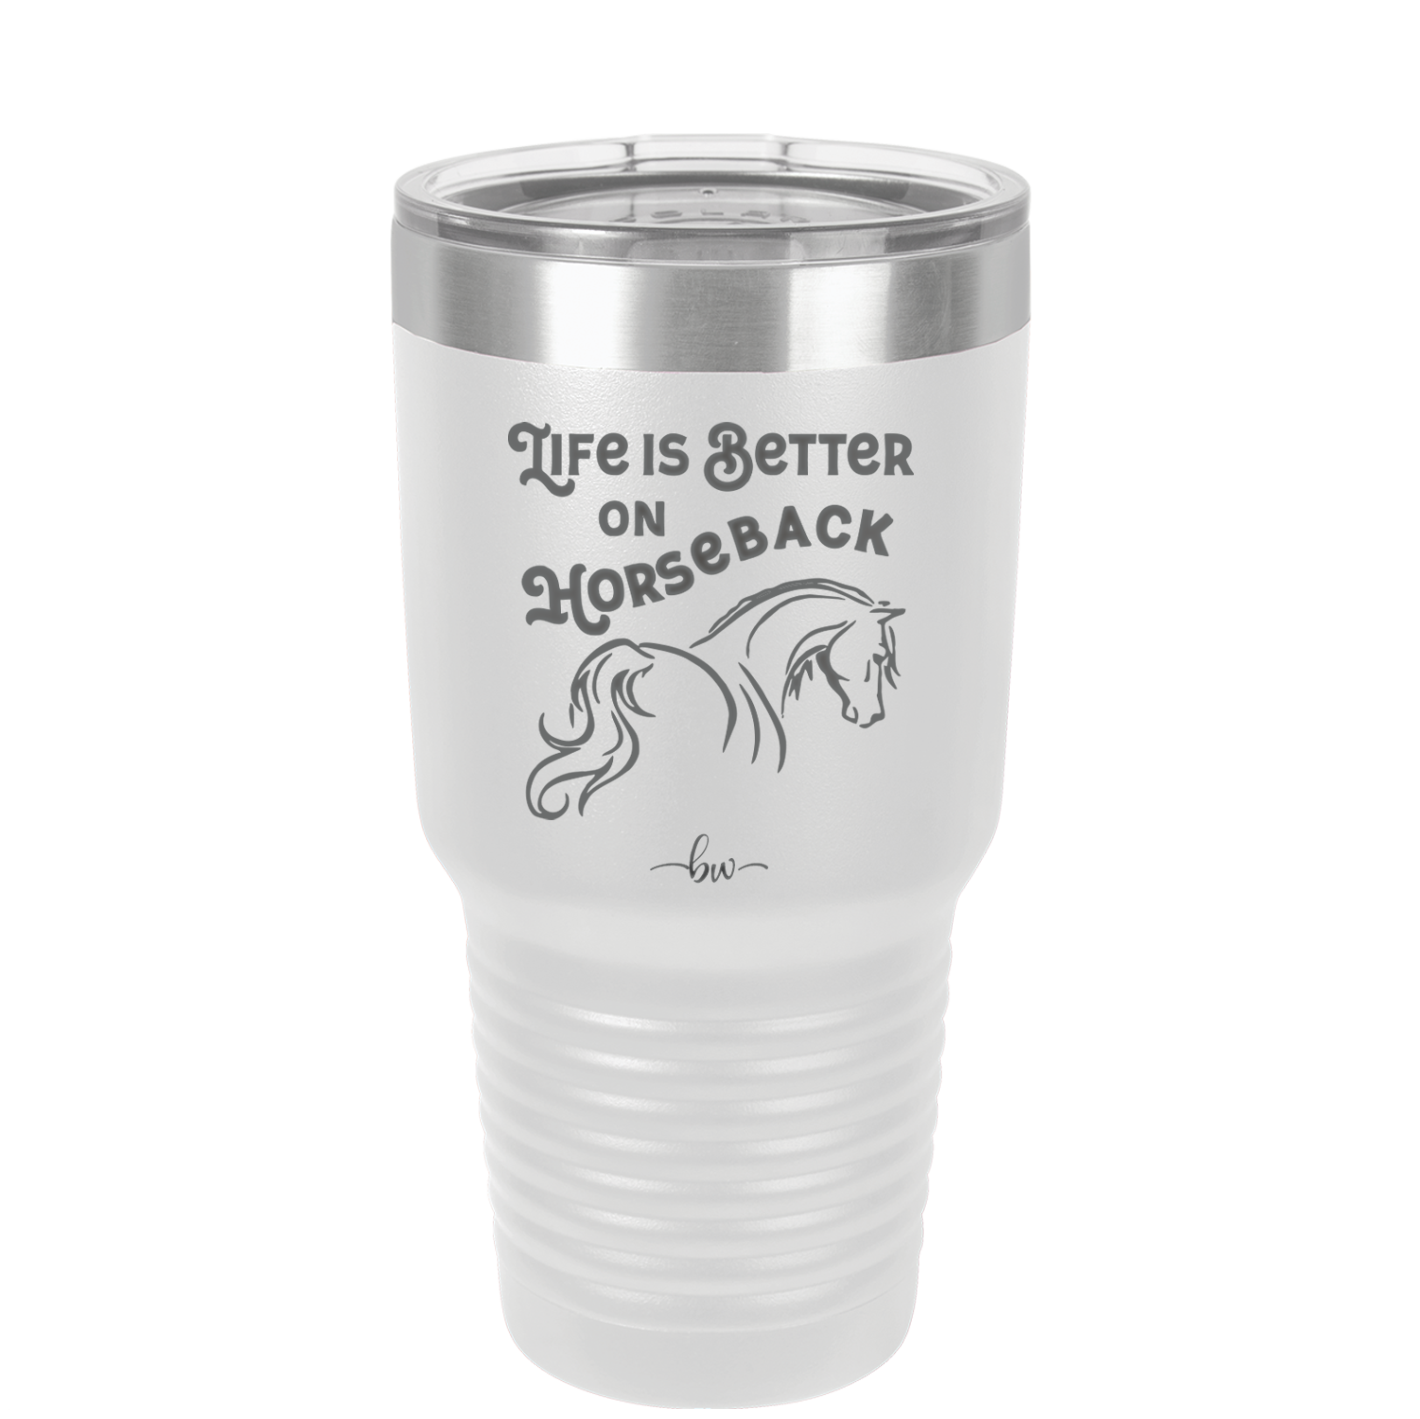 Life is Better on Horseback - Laser Engraved Stainless Steel Drinkware - 1041 -